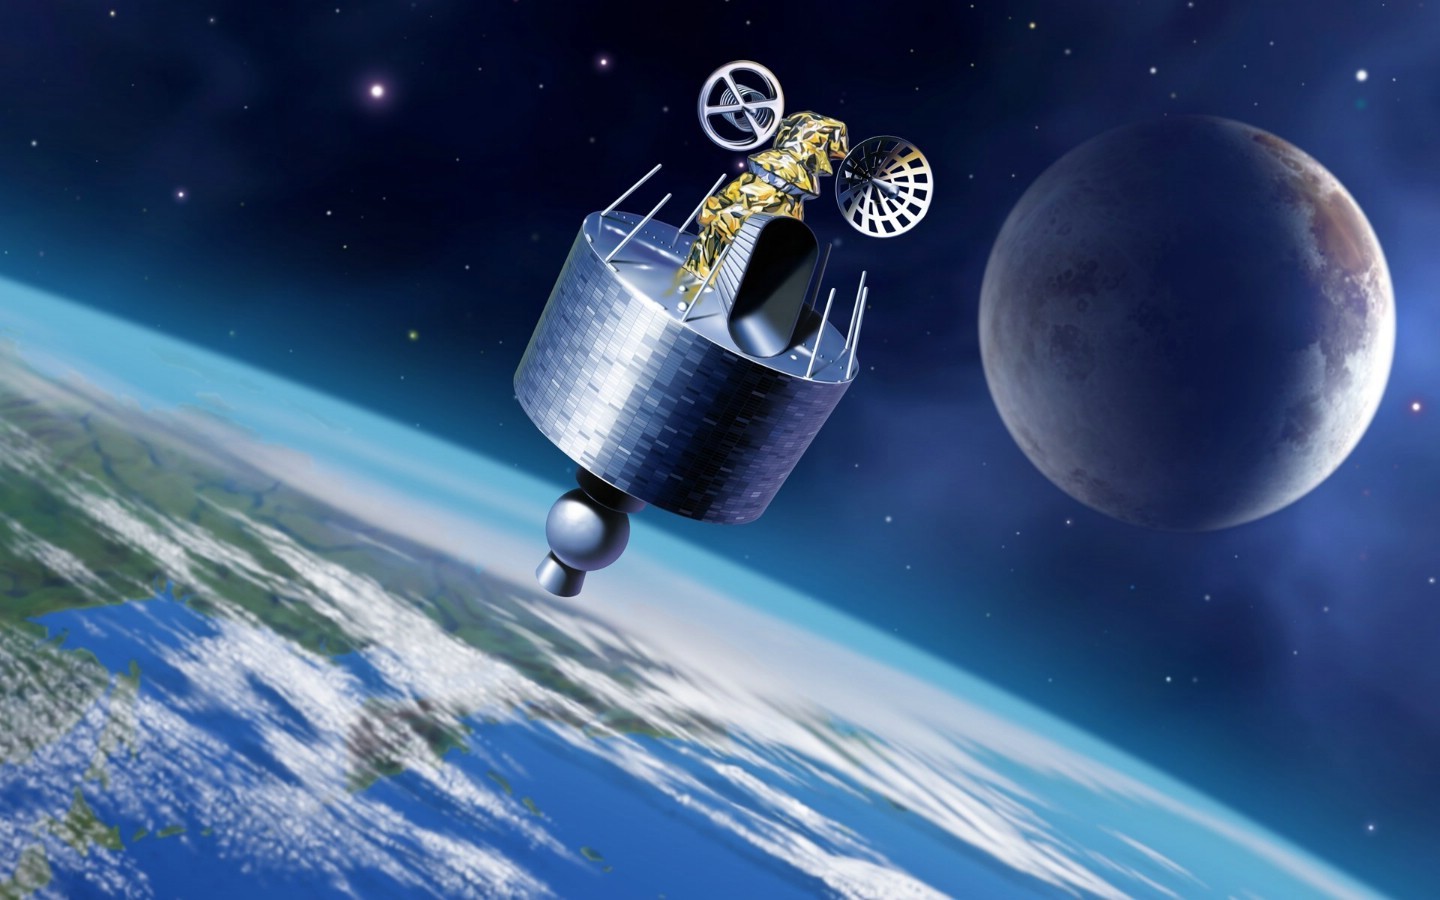 嫦娥五号轨道器和返回器组合体实施第二次月地转移入射